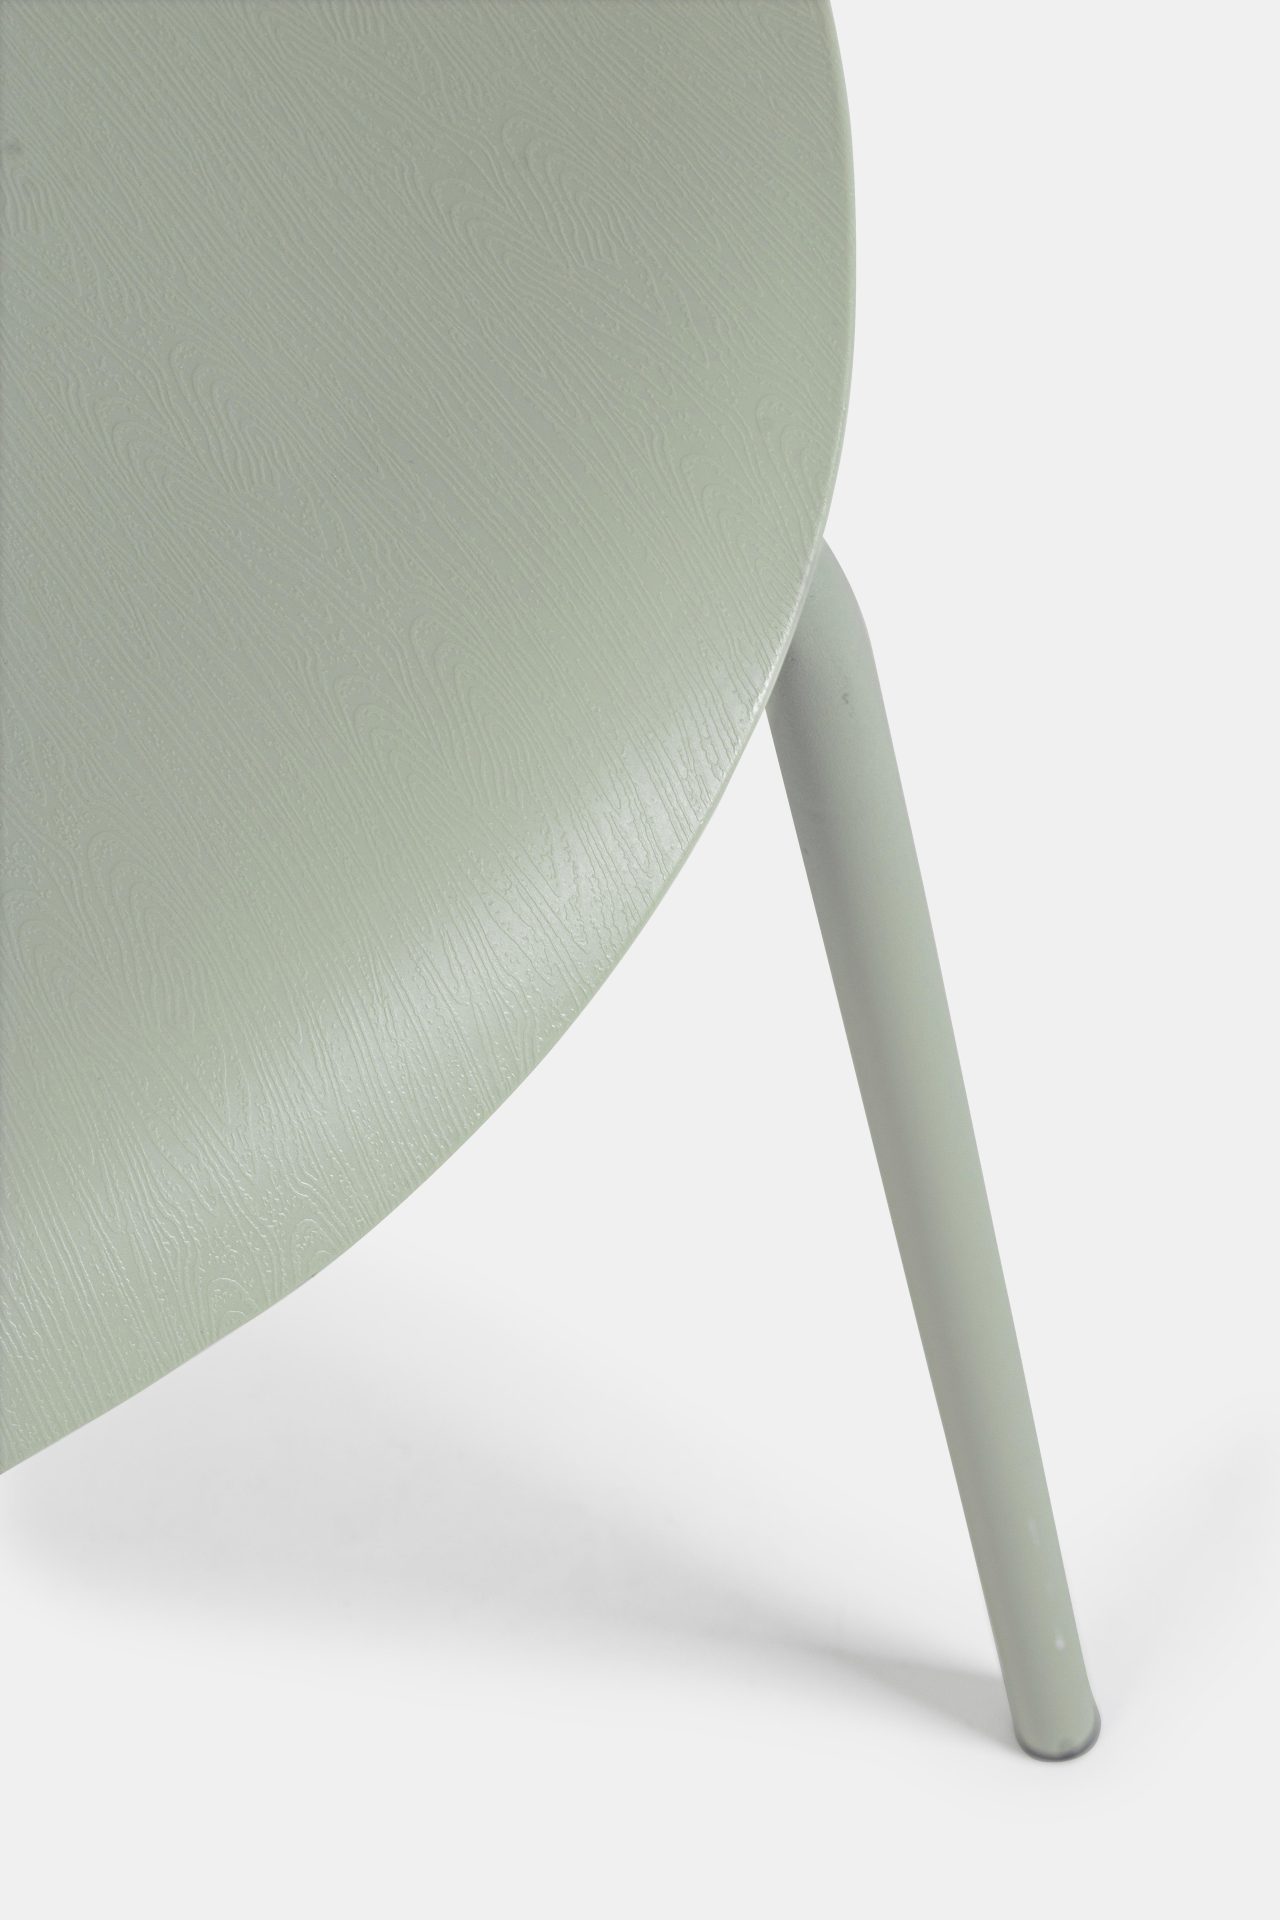 Der Stuhl Tessa überzeugt mit seinem modernem Design. Gefertigt wurde der Stuhl aus Kunststoff, welcher einen grünen Farbton besitzt. Das Gestell ist aus Metall und ist in einer grünen Farbe. Die Sitzhöhe beträgt 45 cm.